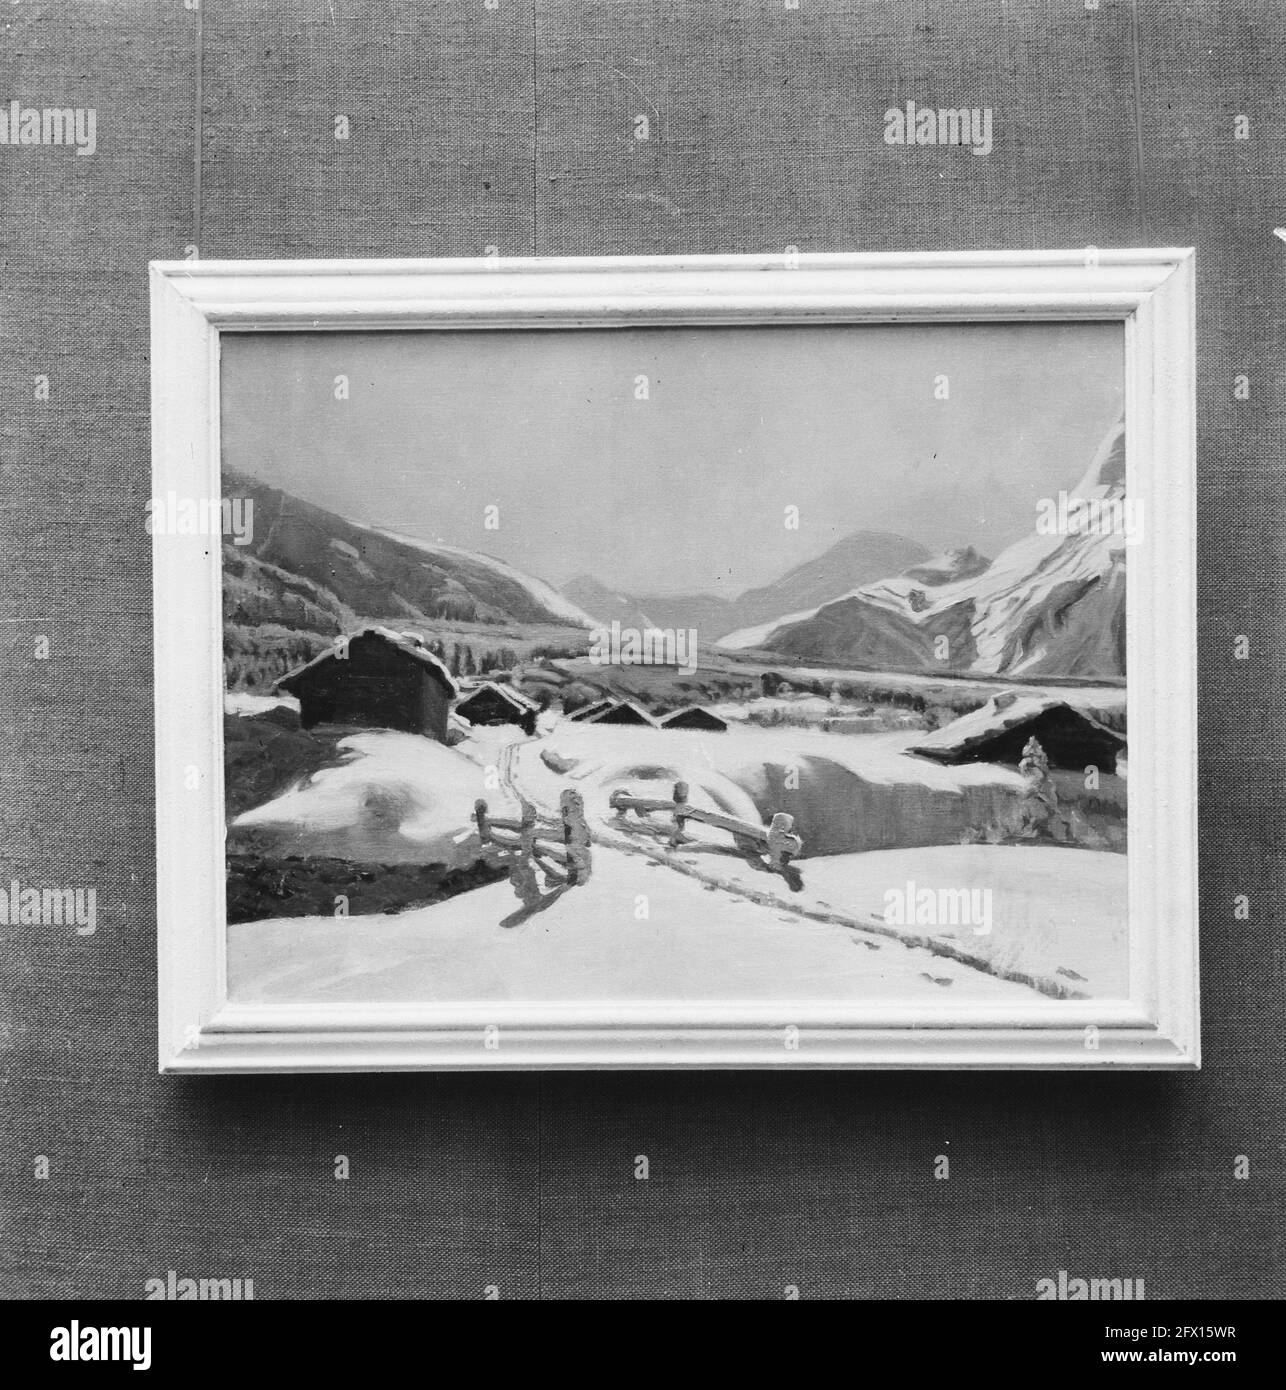 Pinturas de paisaje Imágenes de stock en blanco y negro - Alamy